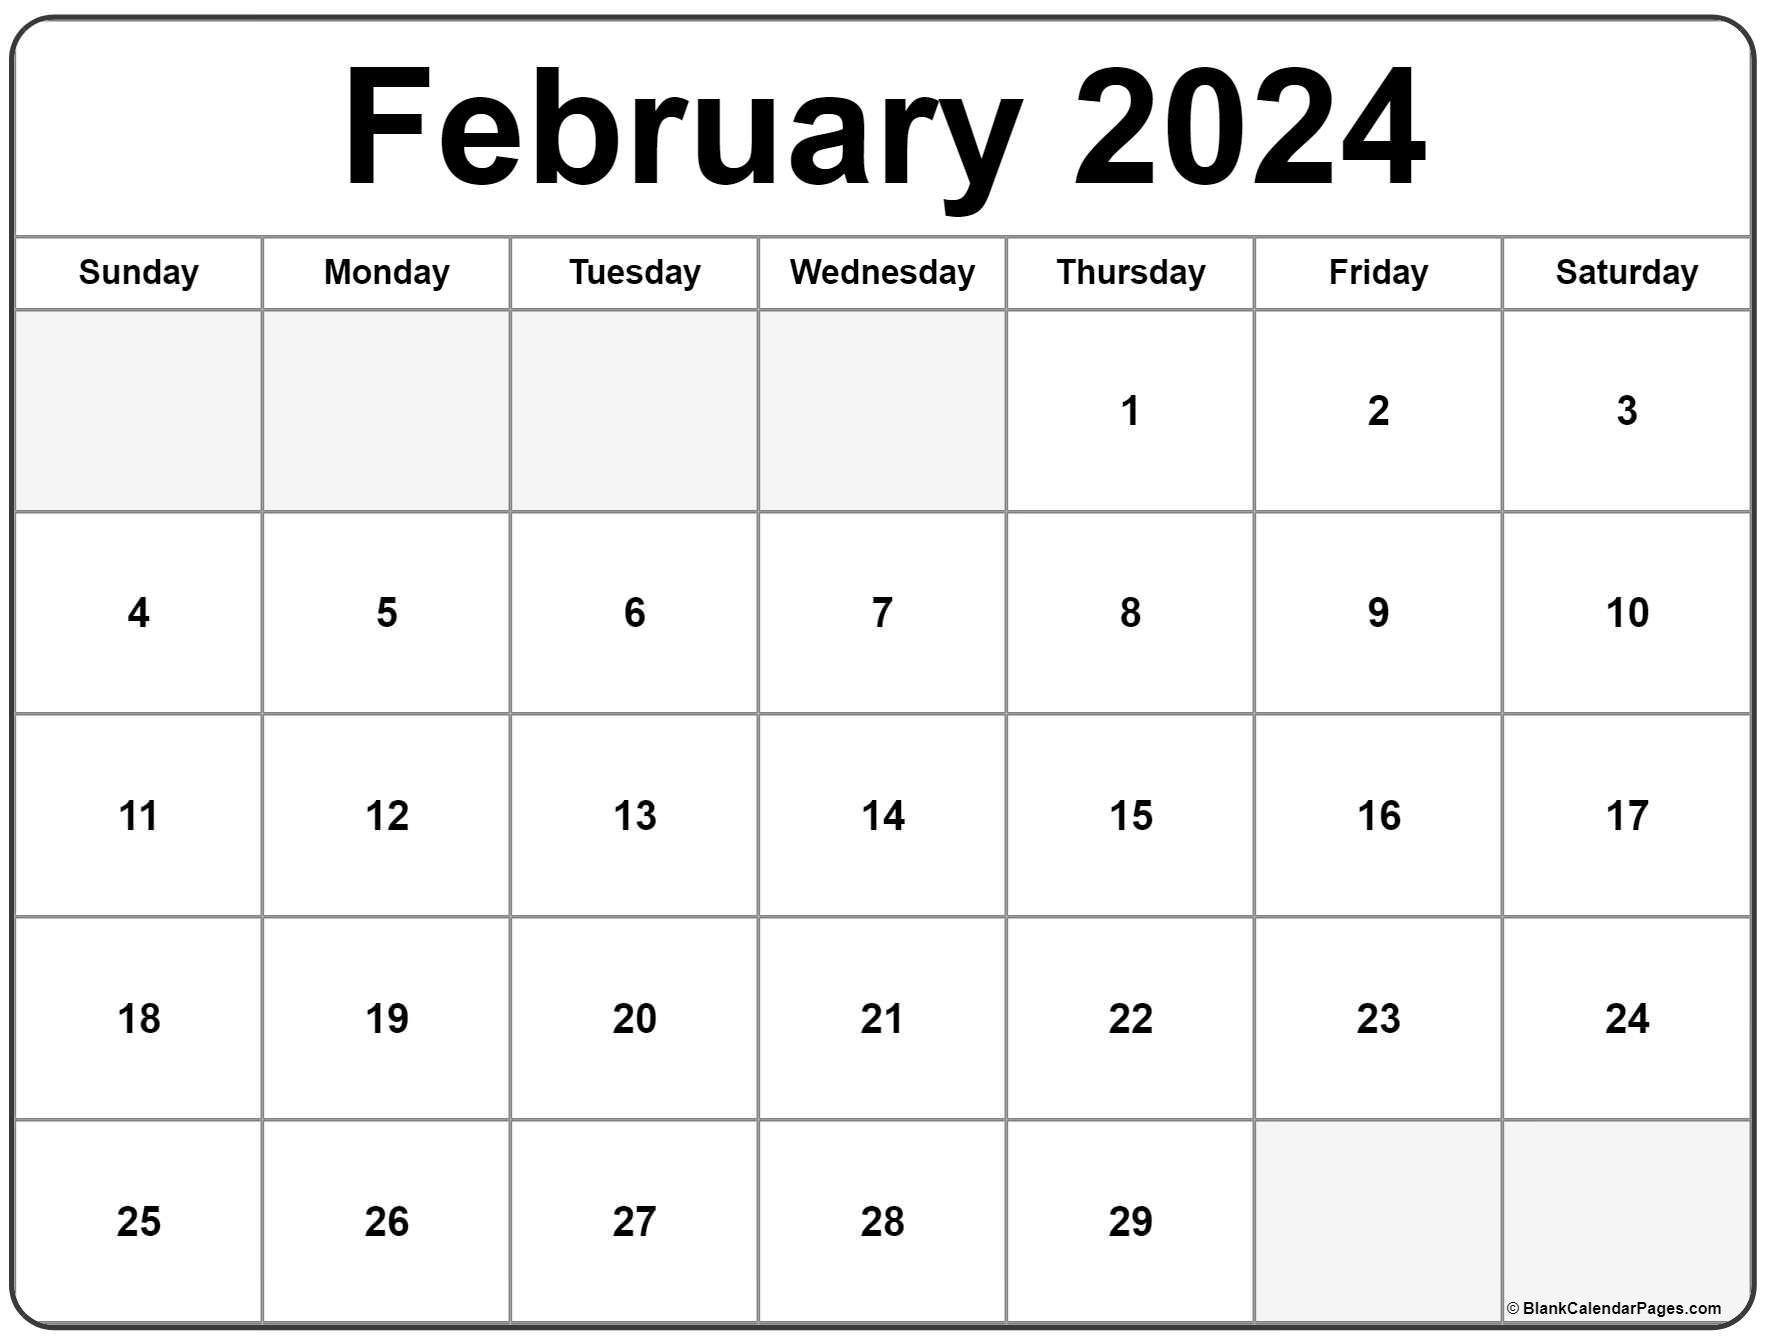 February 2023 calendar free printable calendar templates